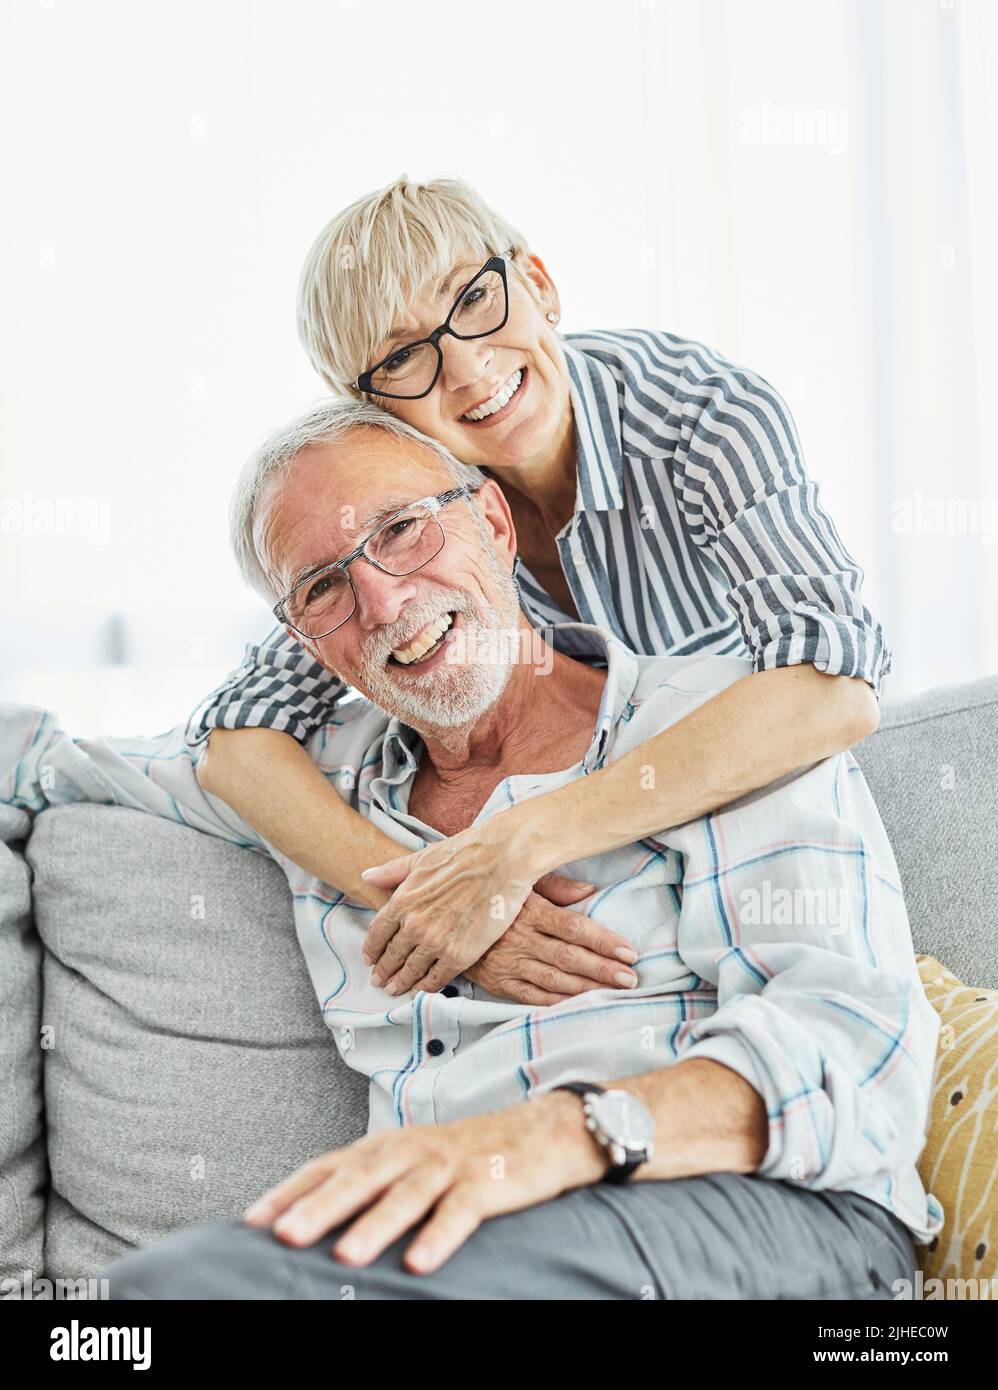 Seniorenportrait Frau Mann Paar glücklicher Ruhestand lächelnd Liebe älterer Lebensstil alt zusammen Stockfoto